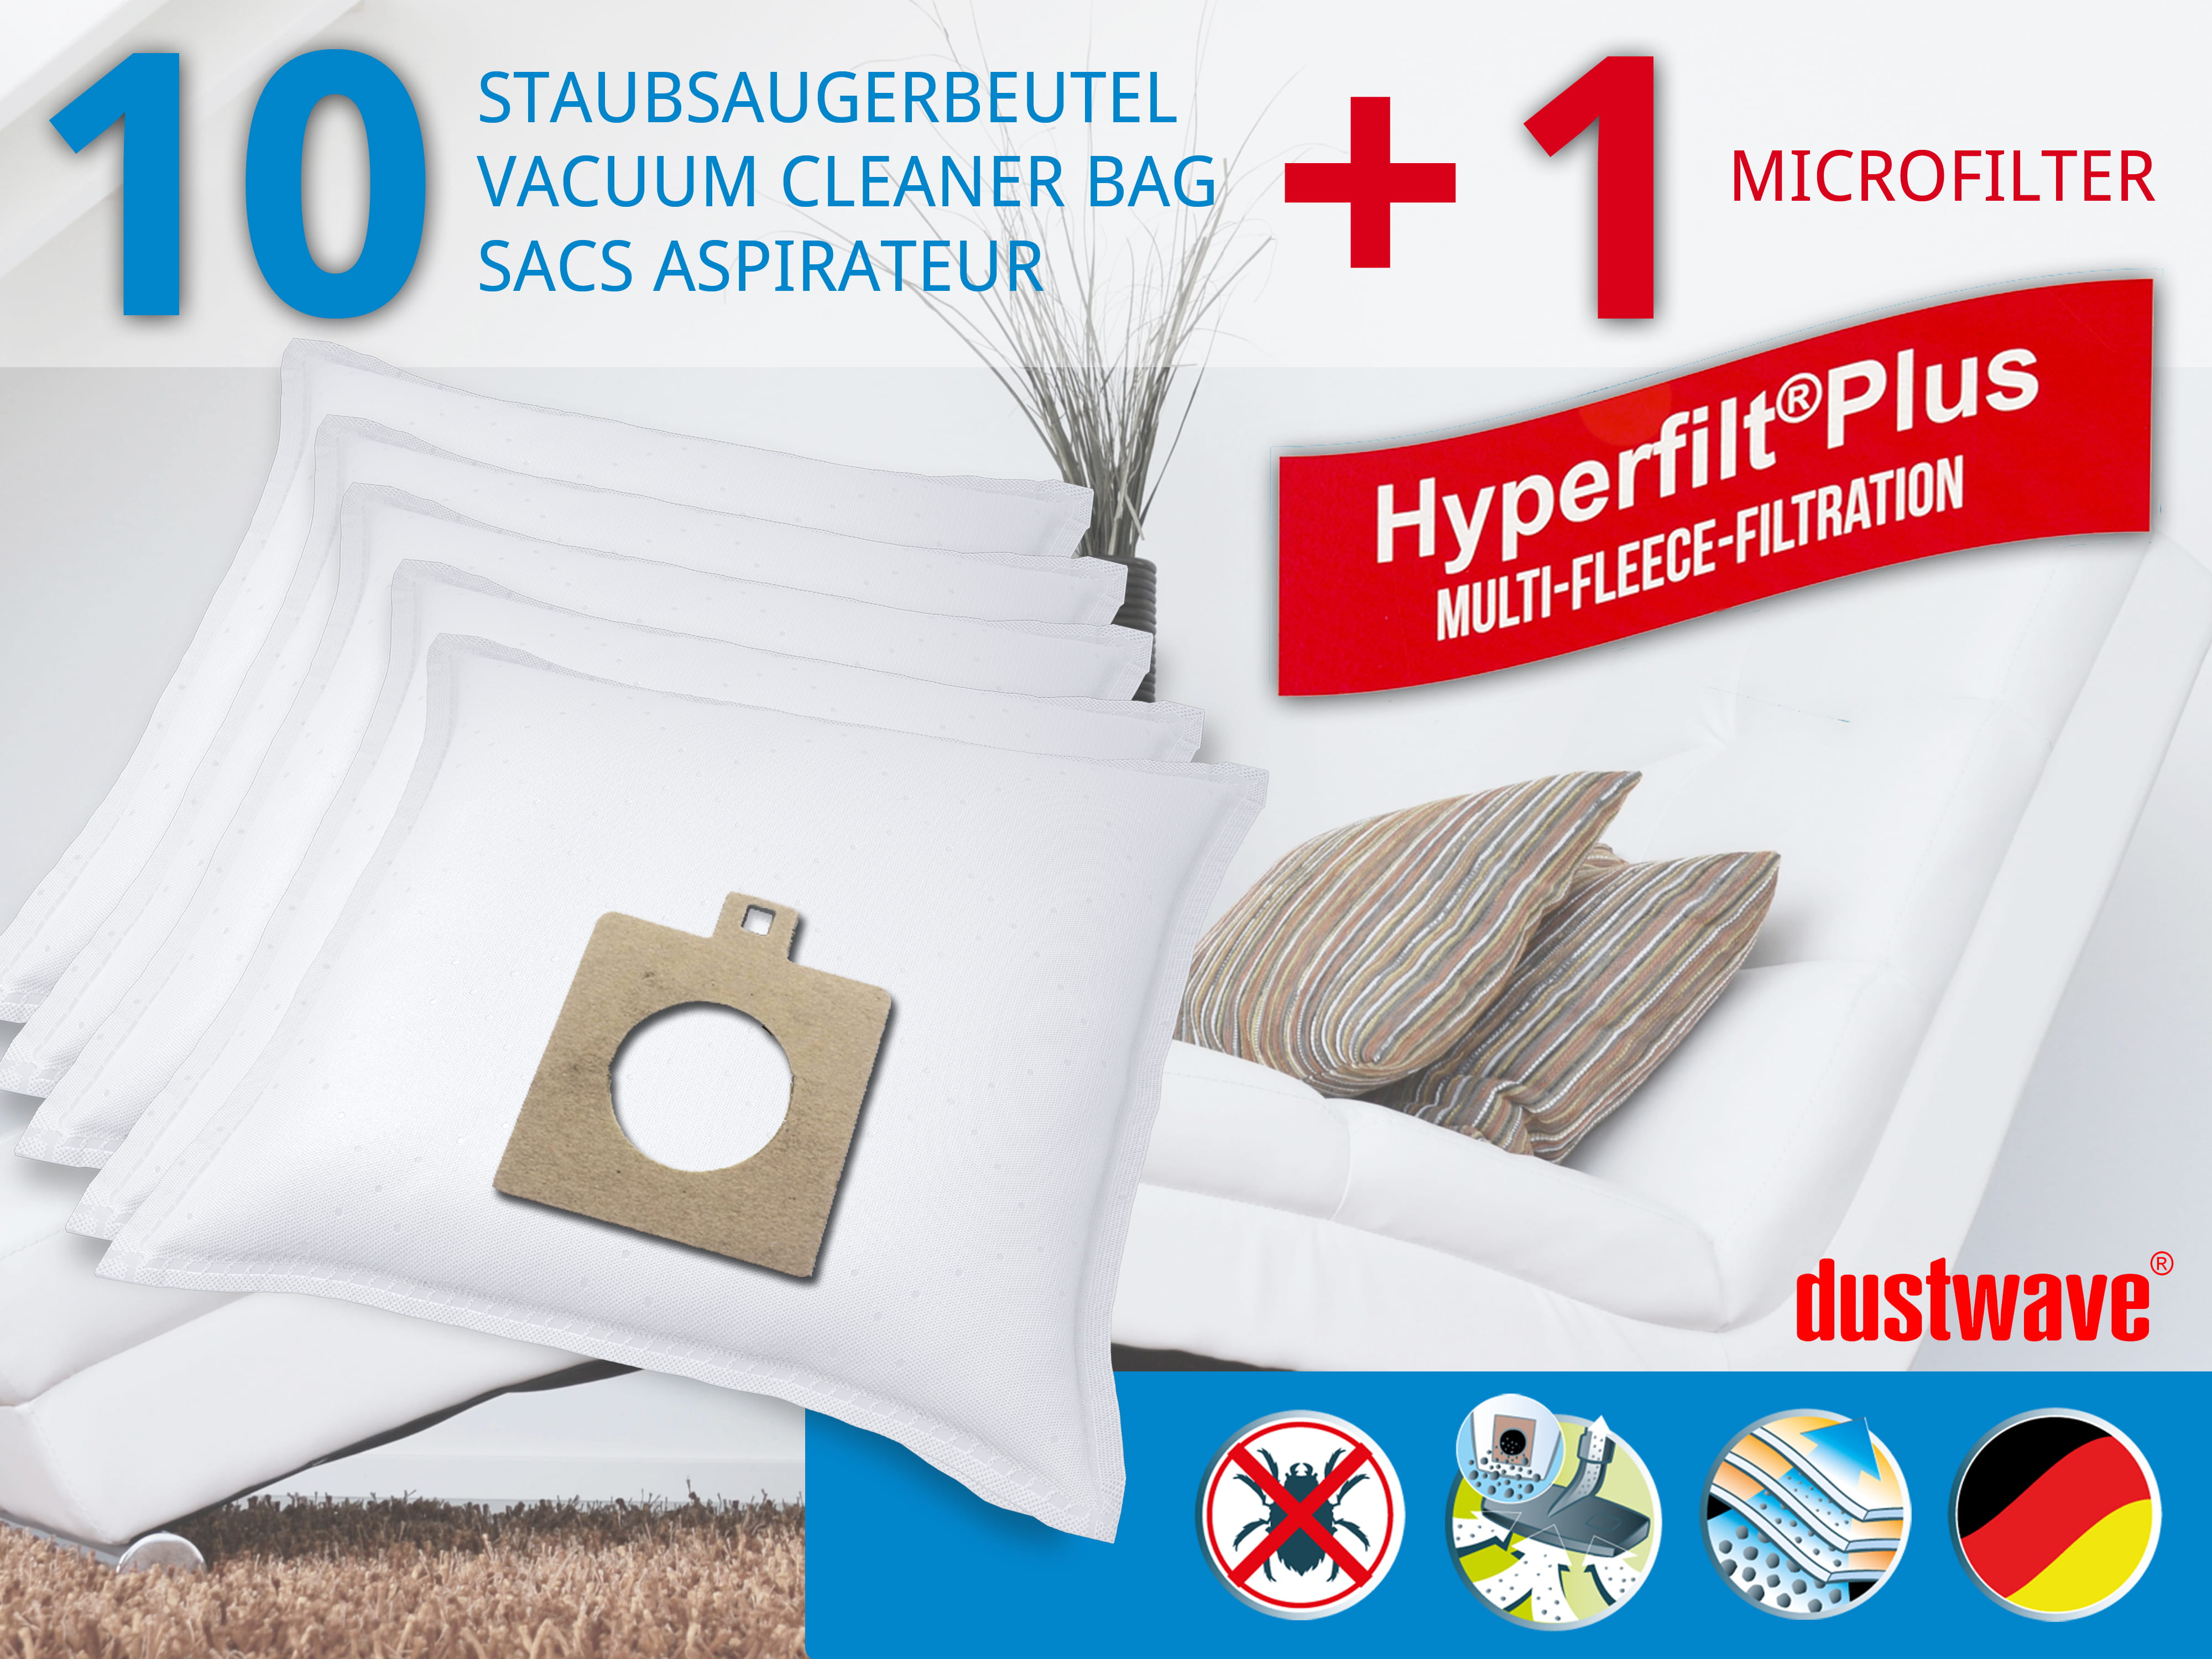 Dustwave® 10 Staubsaugerbeutel für Delta KS 1202 - hocheffizient, mehrlagiges Mikrovlies mit Hygieneverschluss - Made in Germany